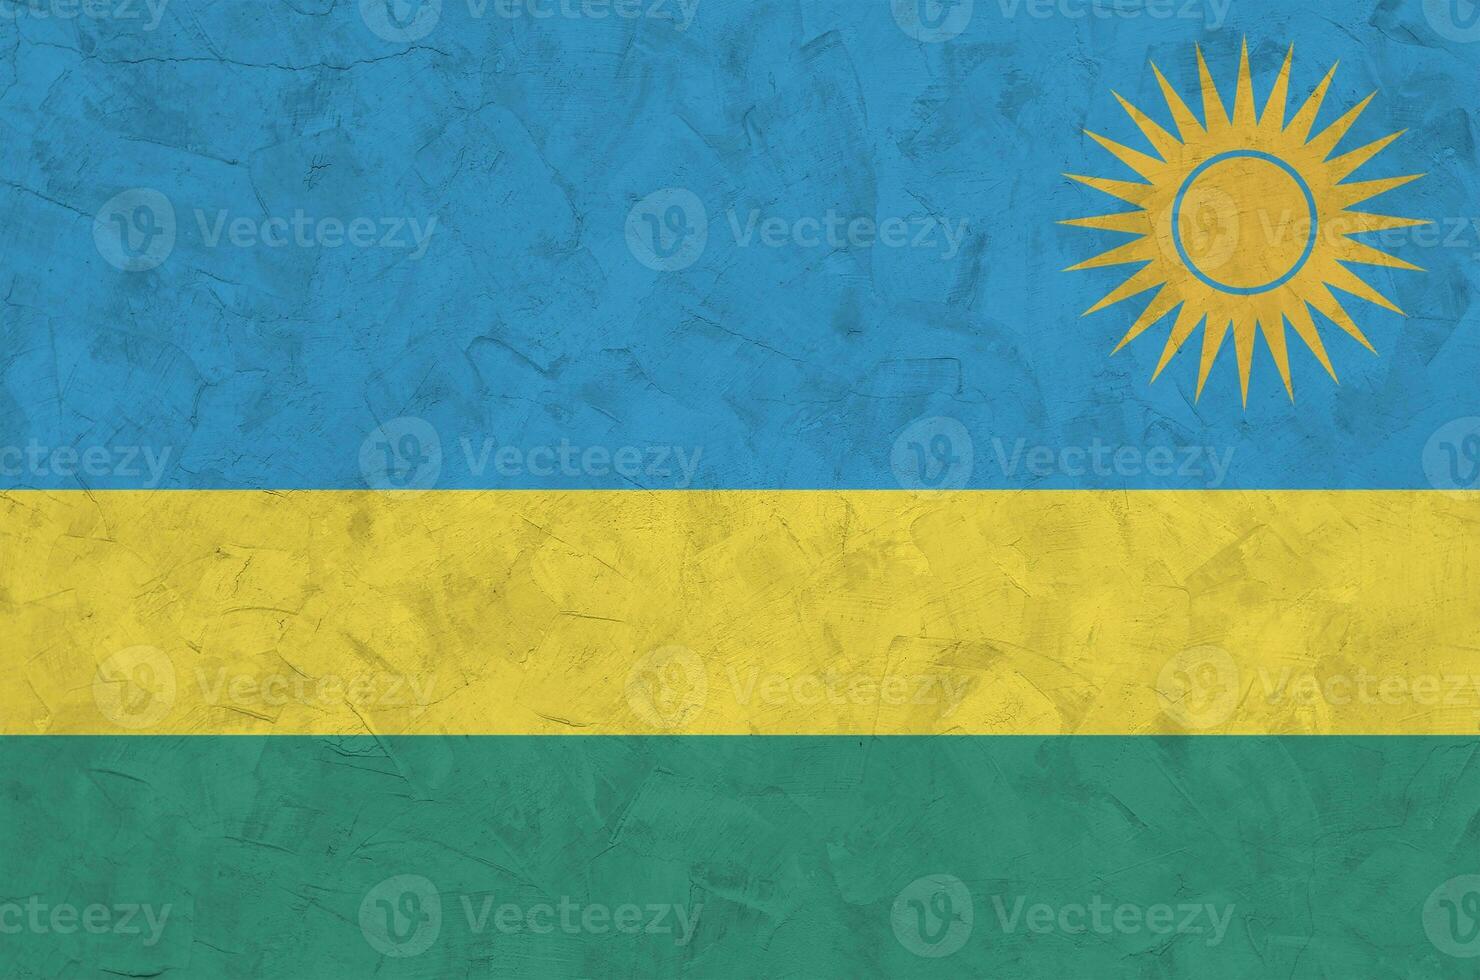 rwanda flagga avbildad i ljus måla färger på gammal lättnad putsning vägg. texturerad baner på grov bakgrund foto